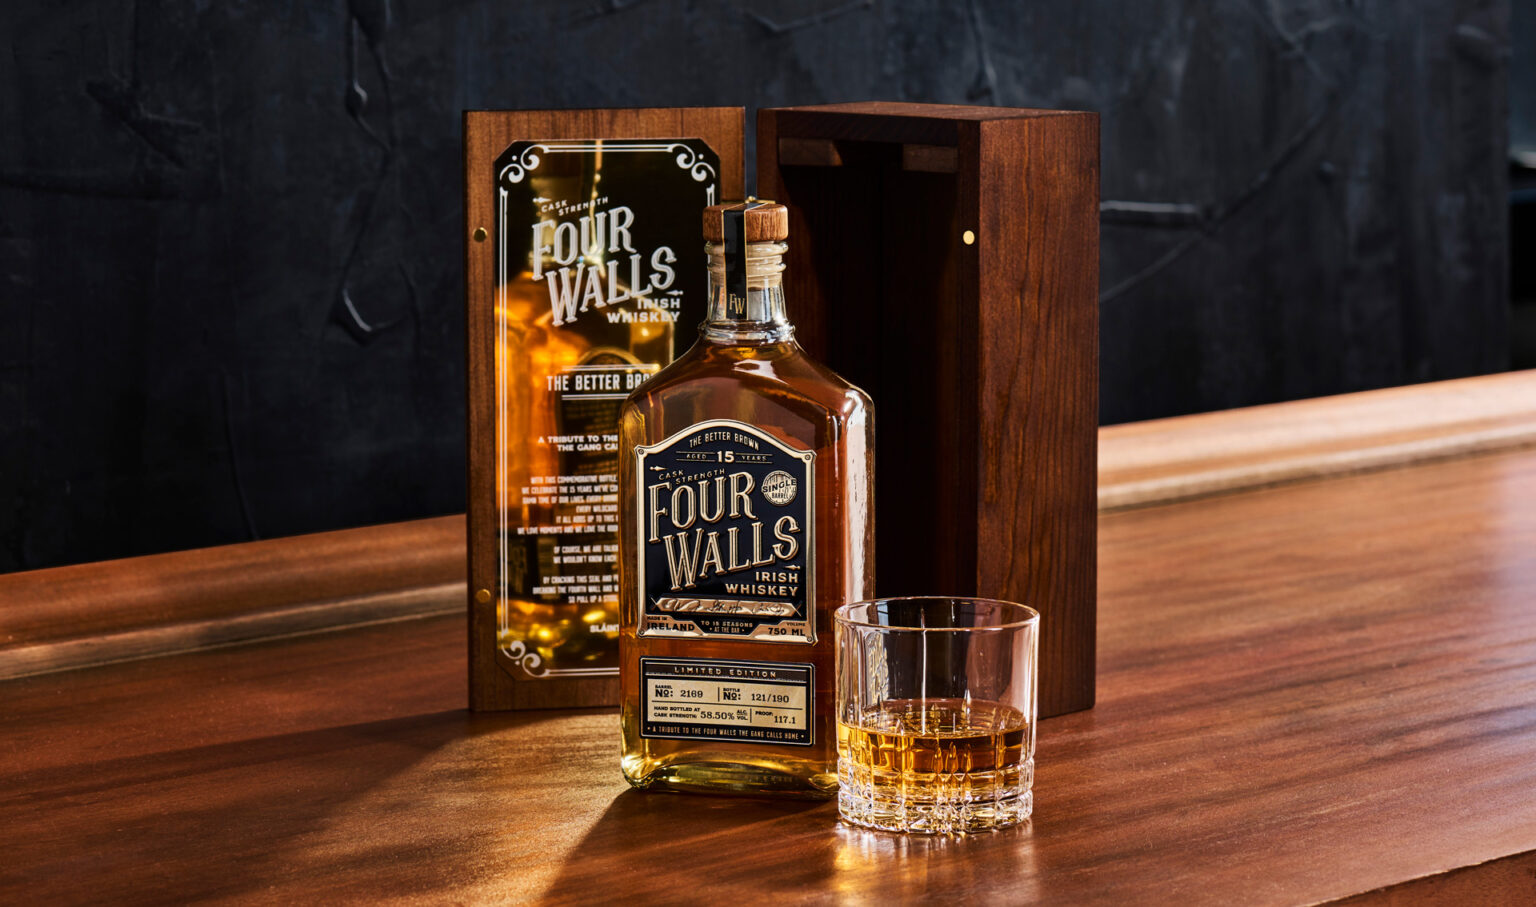 imagen 4 de Four Walls Whisky, un nuevo whisky americano.